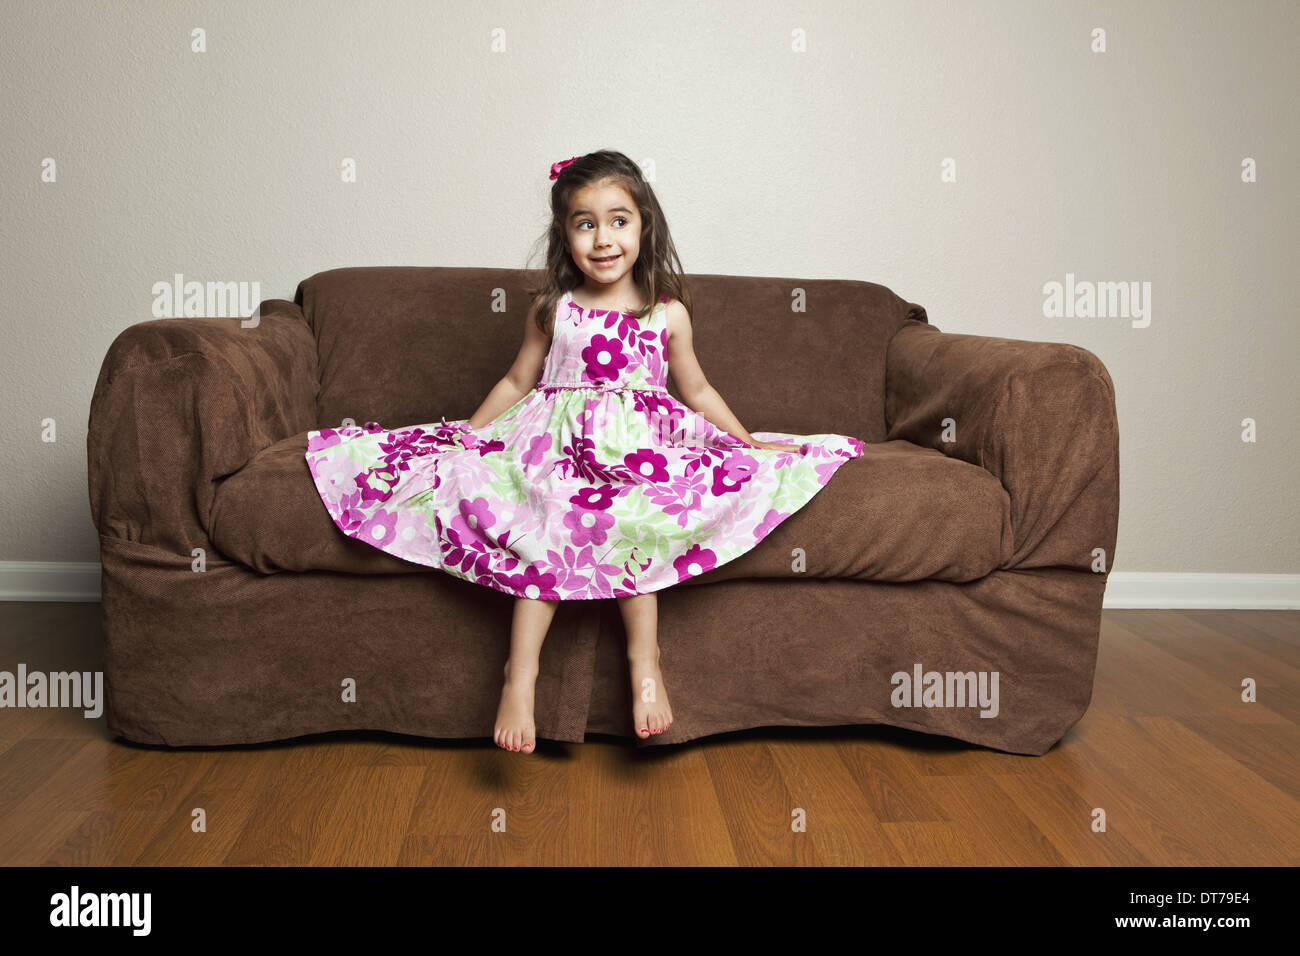 Shetland entrenador alcanzar Una niña de 3 años de edad con el cabello marrón largo en un vestido de  algodón con flores rosas con la falda extendida, sentado en un sofá de  color marrón Fotografía